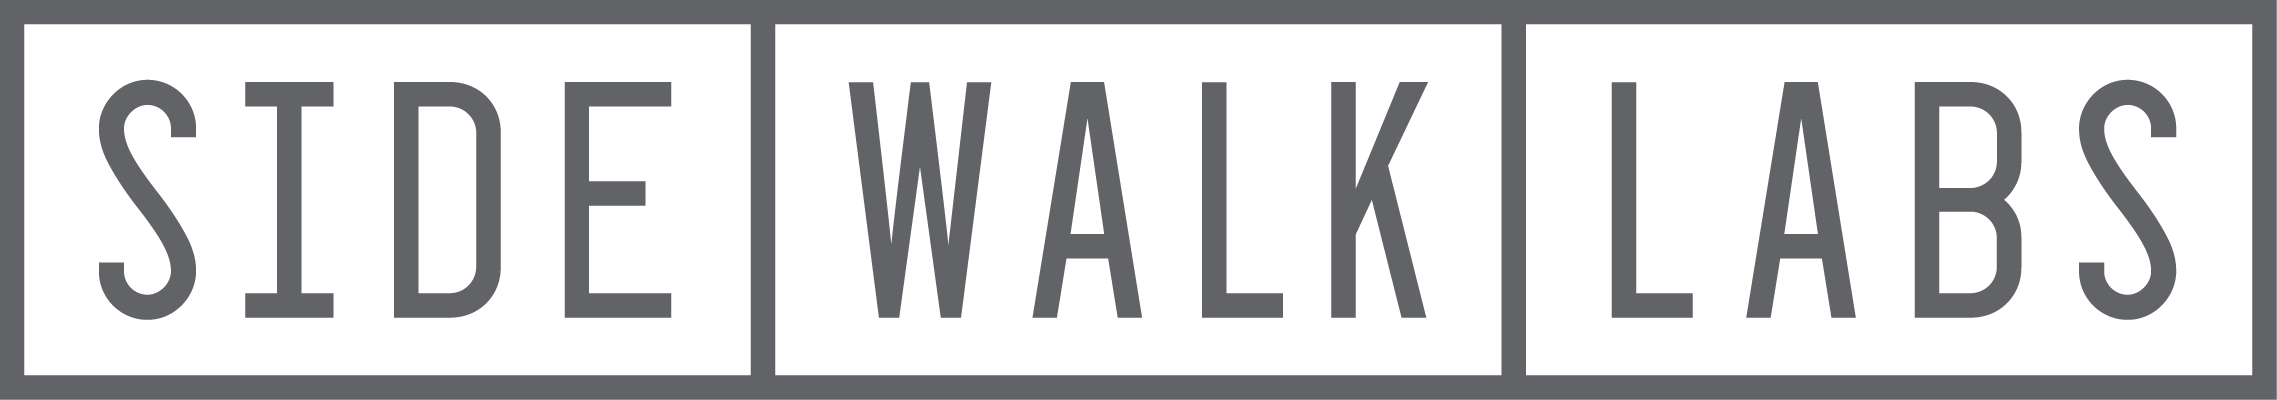 sidewalklabl_logo